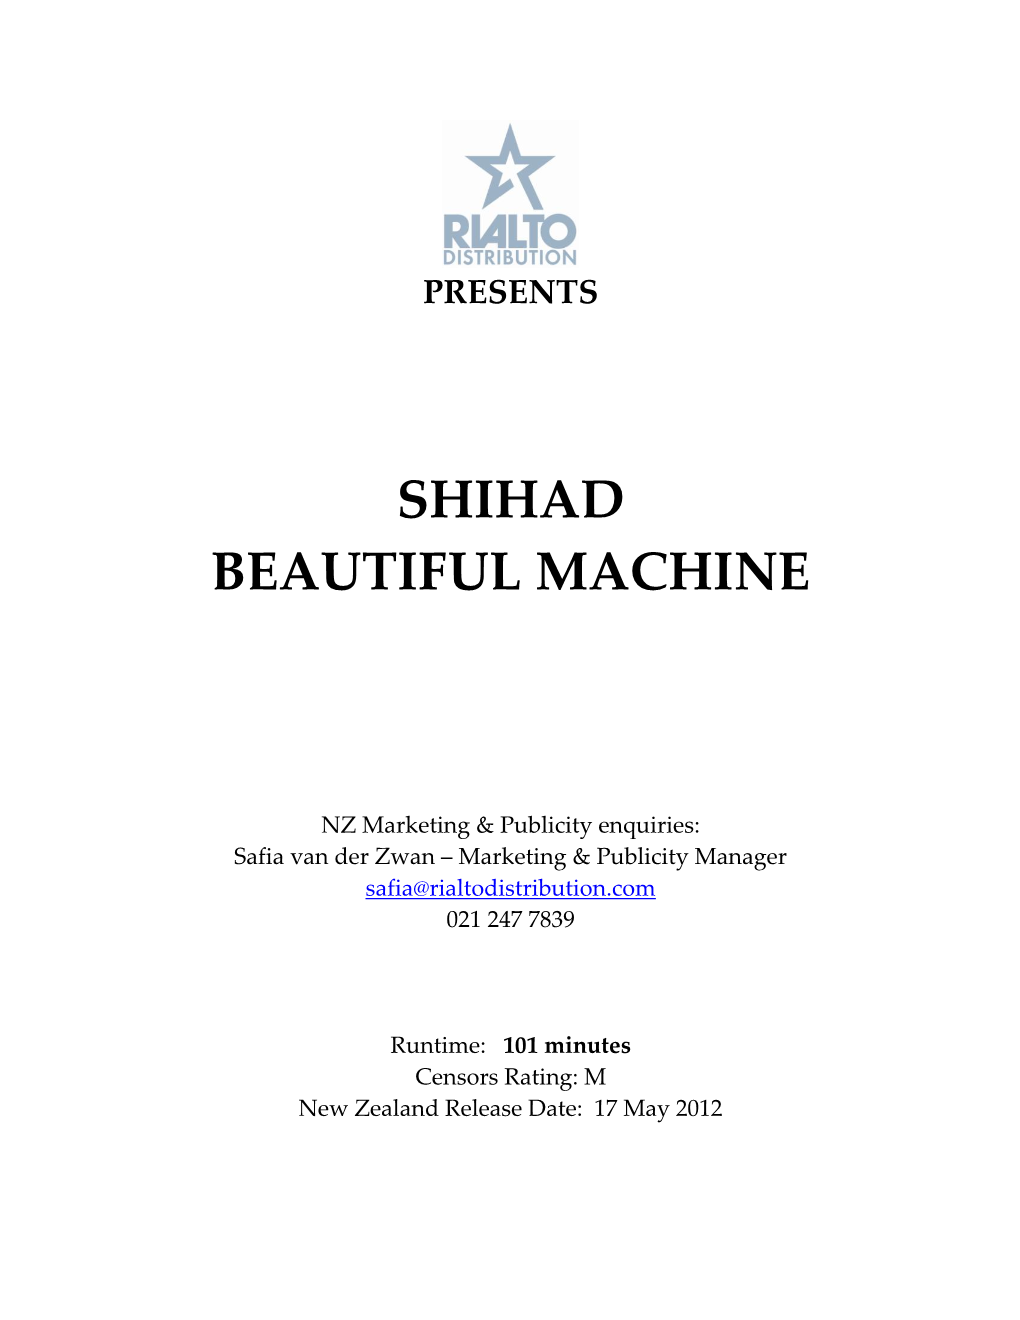 Shihad Beautiful Machine